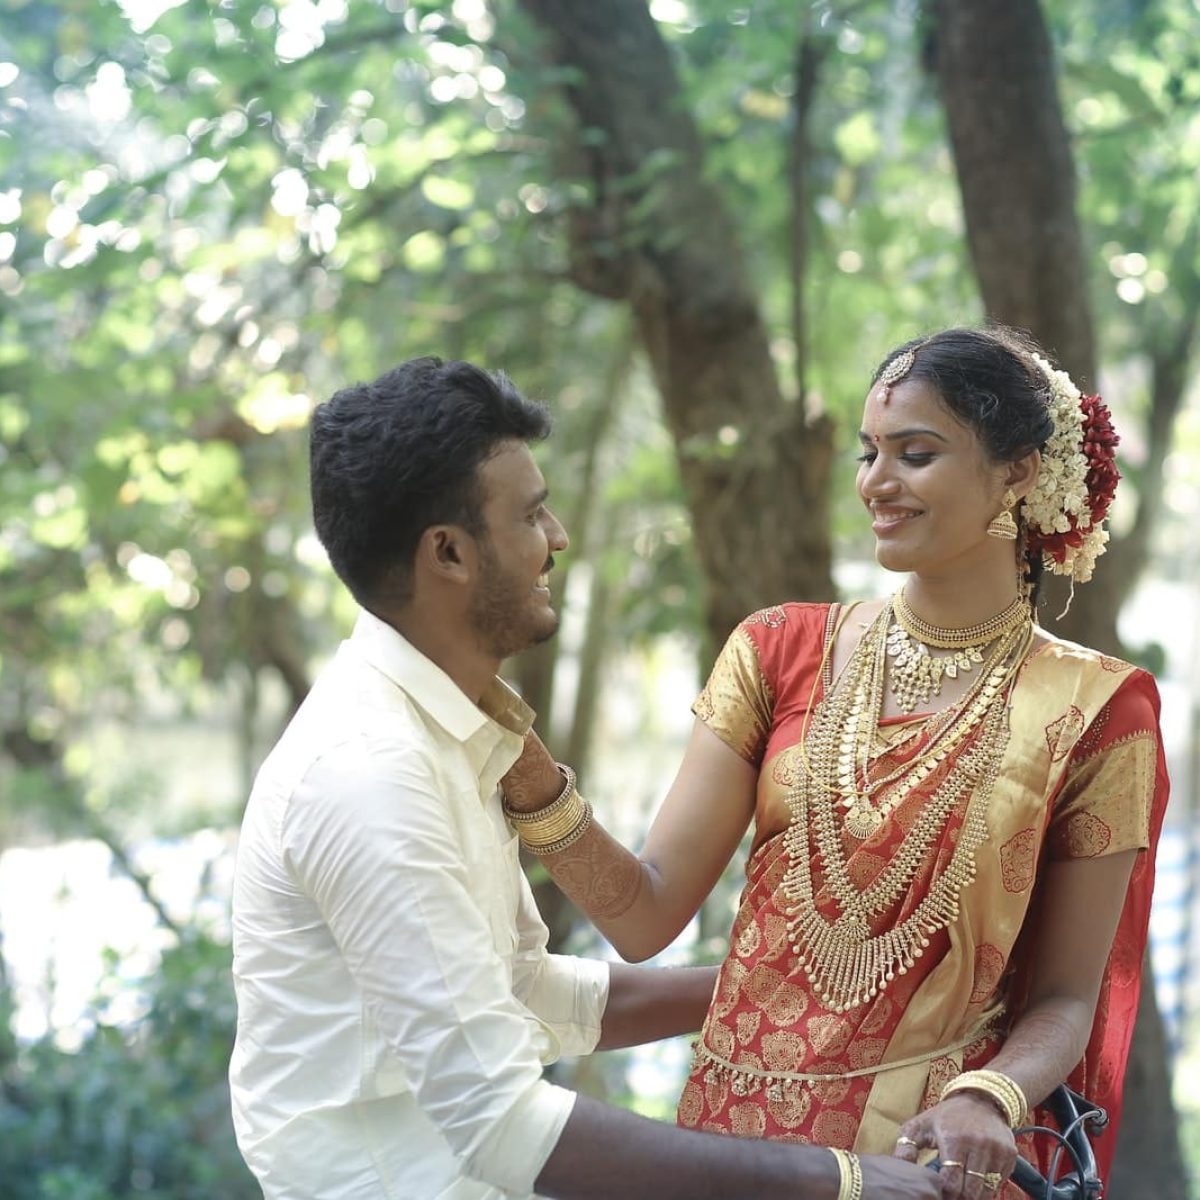 Mariage en Inde symbole de fertilité